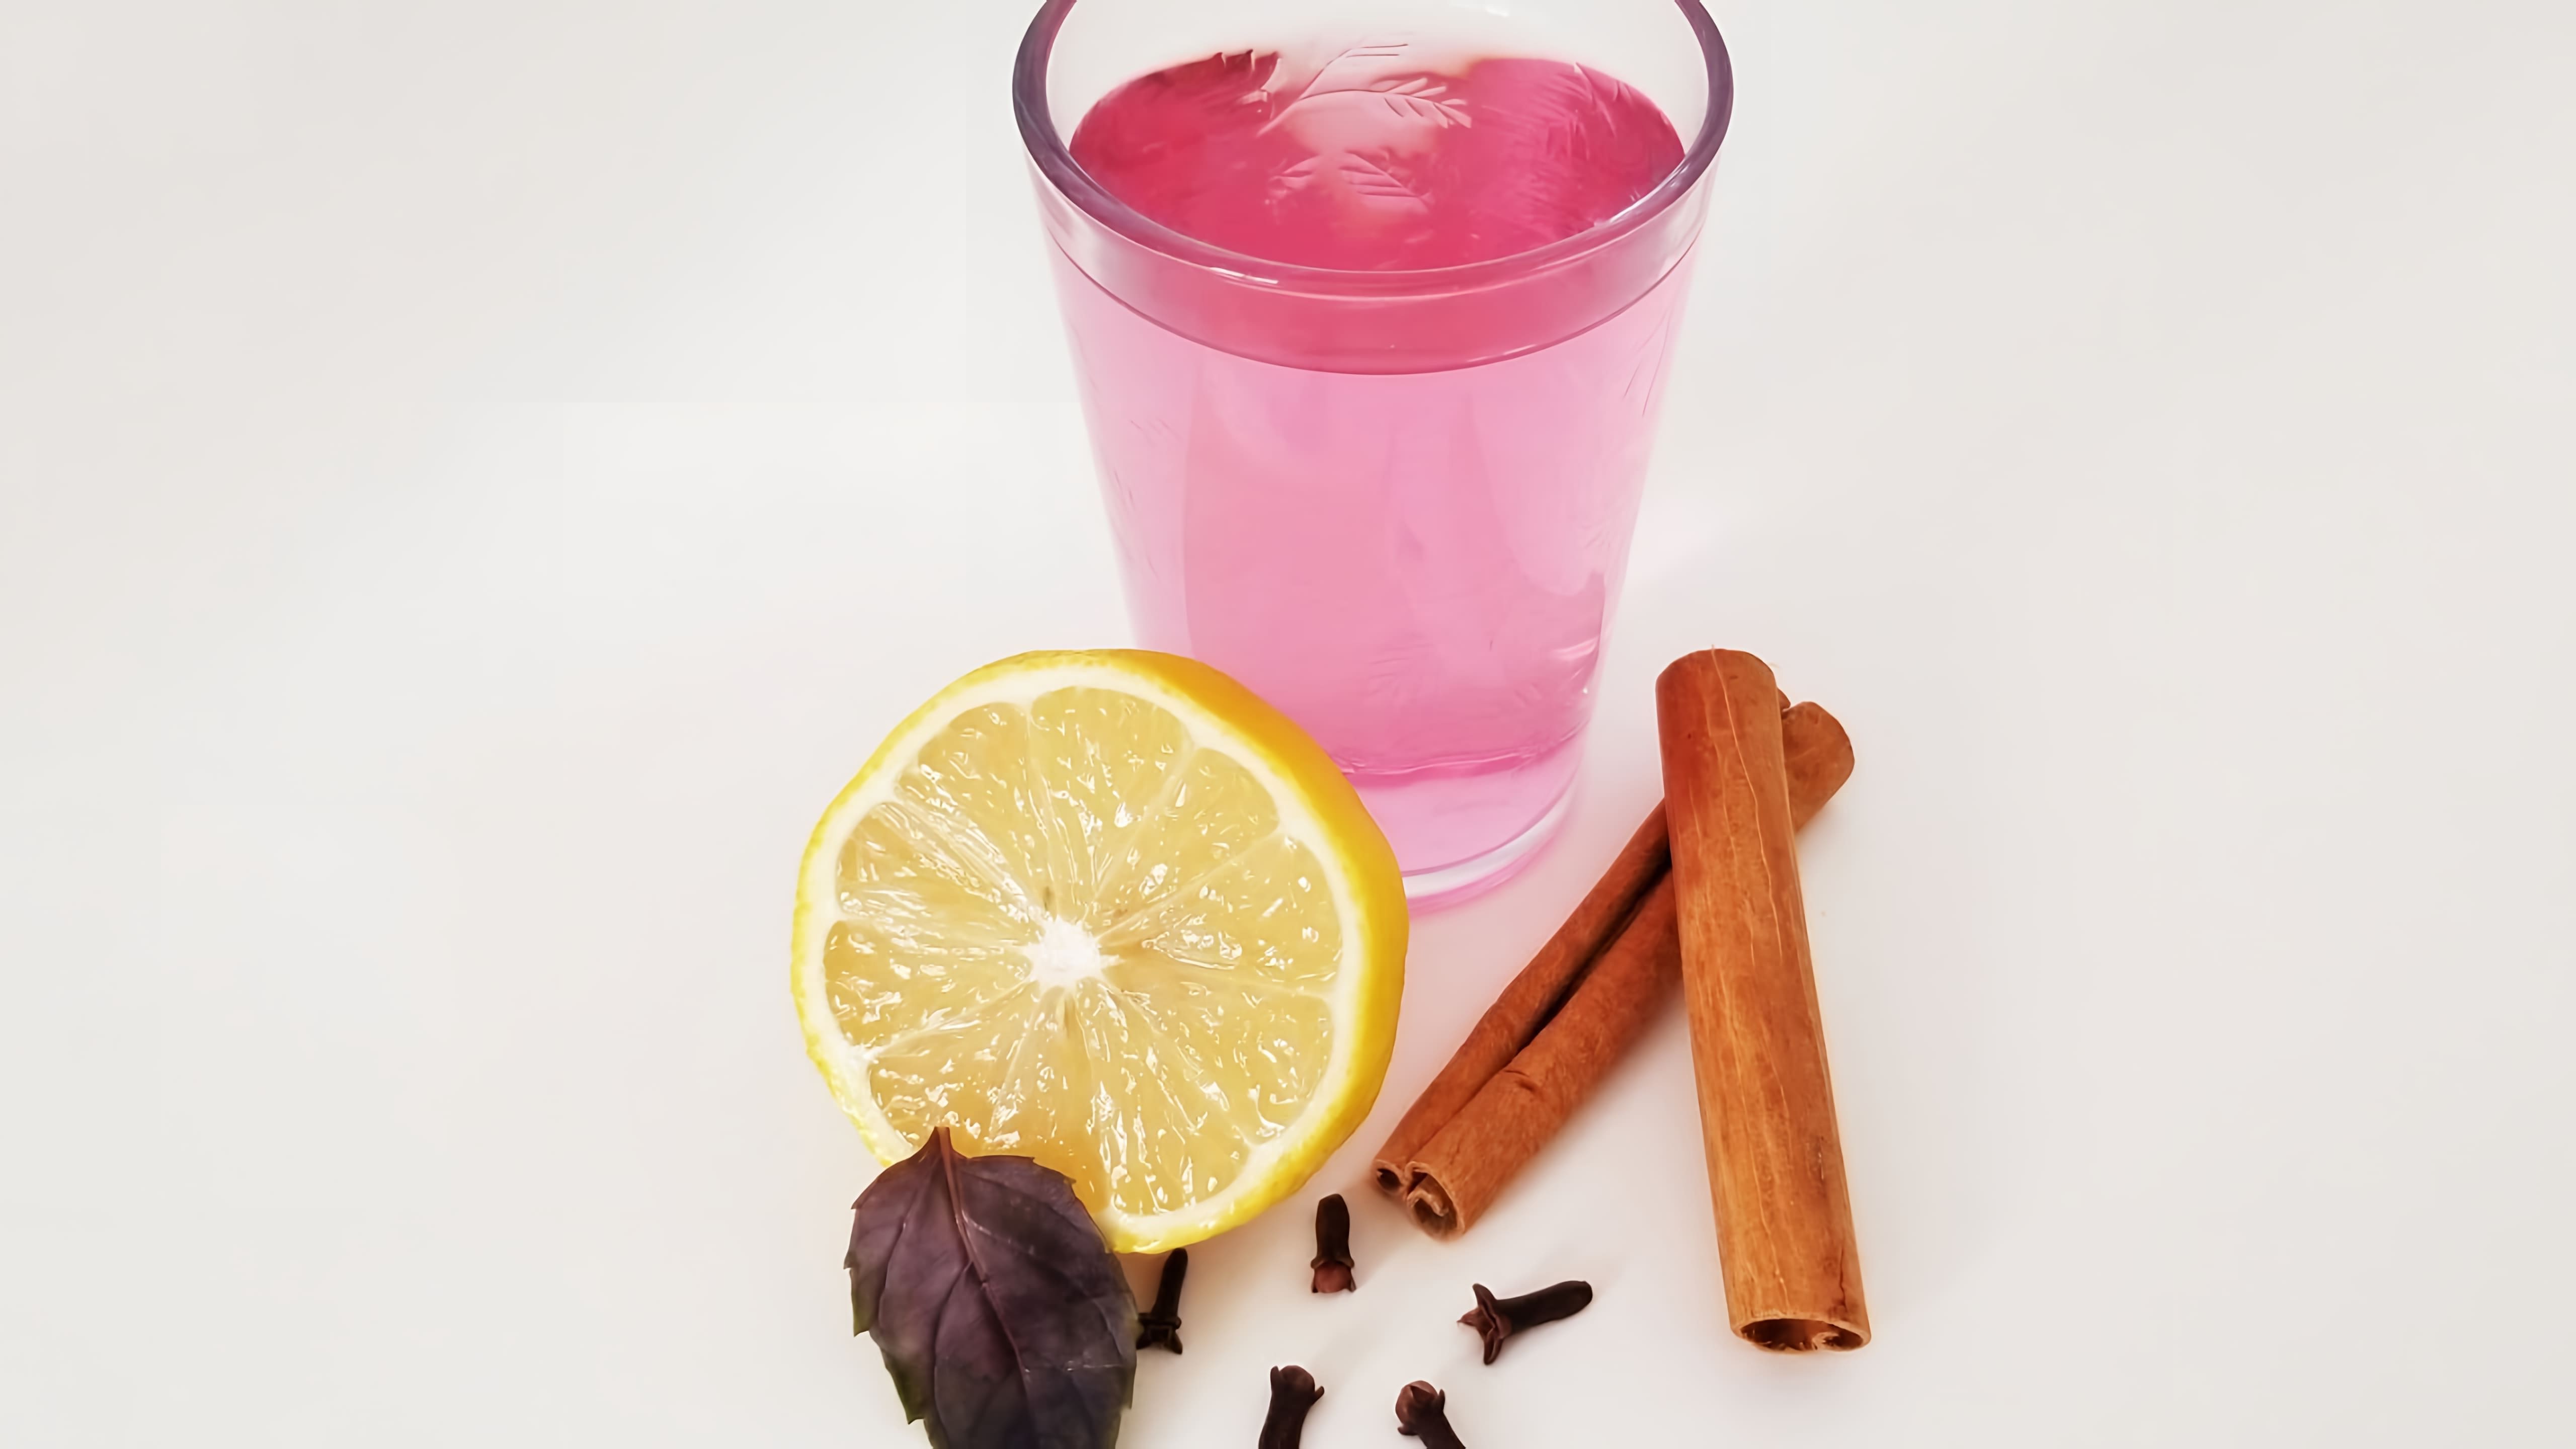 В этом видео демонстрируется рецепт напитка из фиолетового базилика